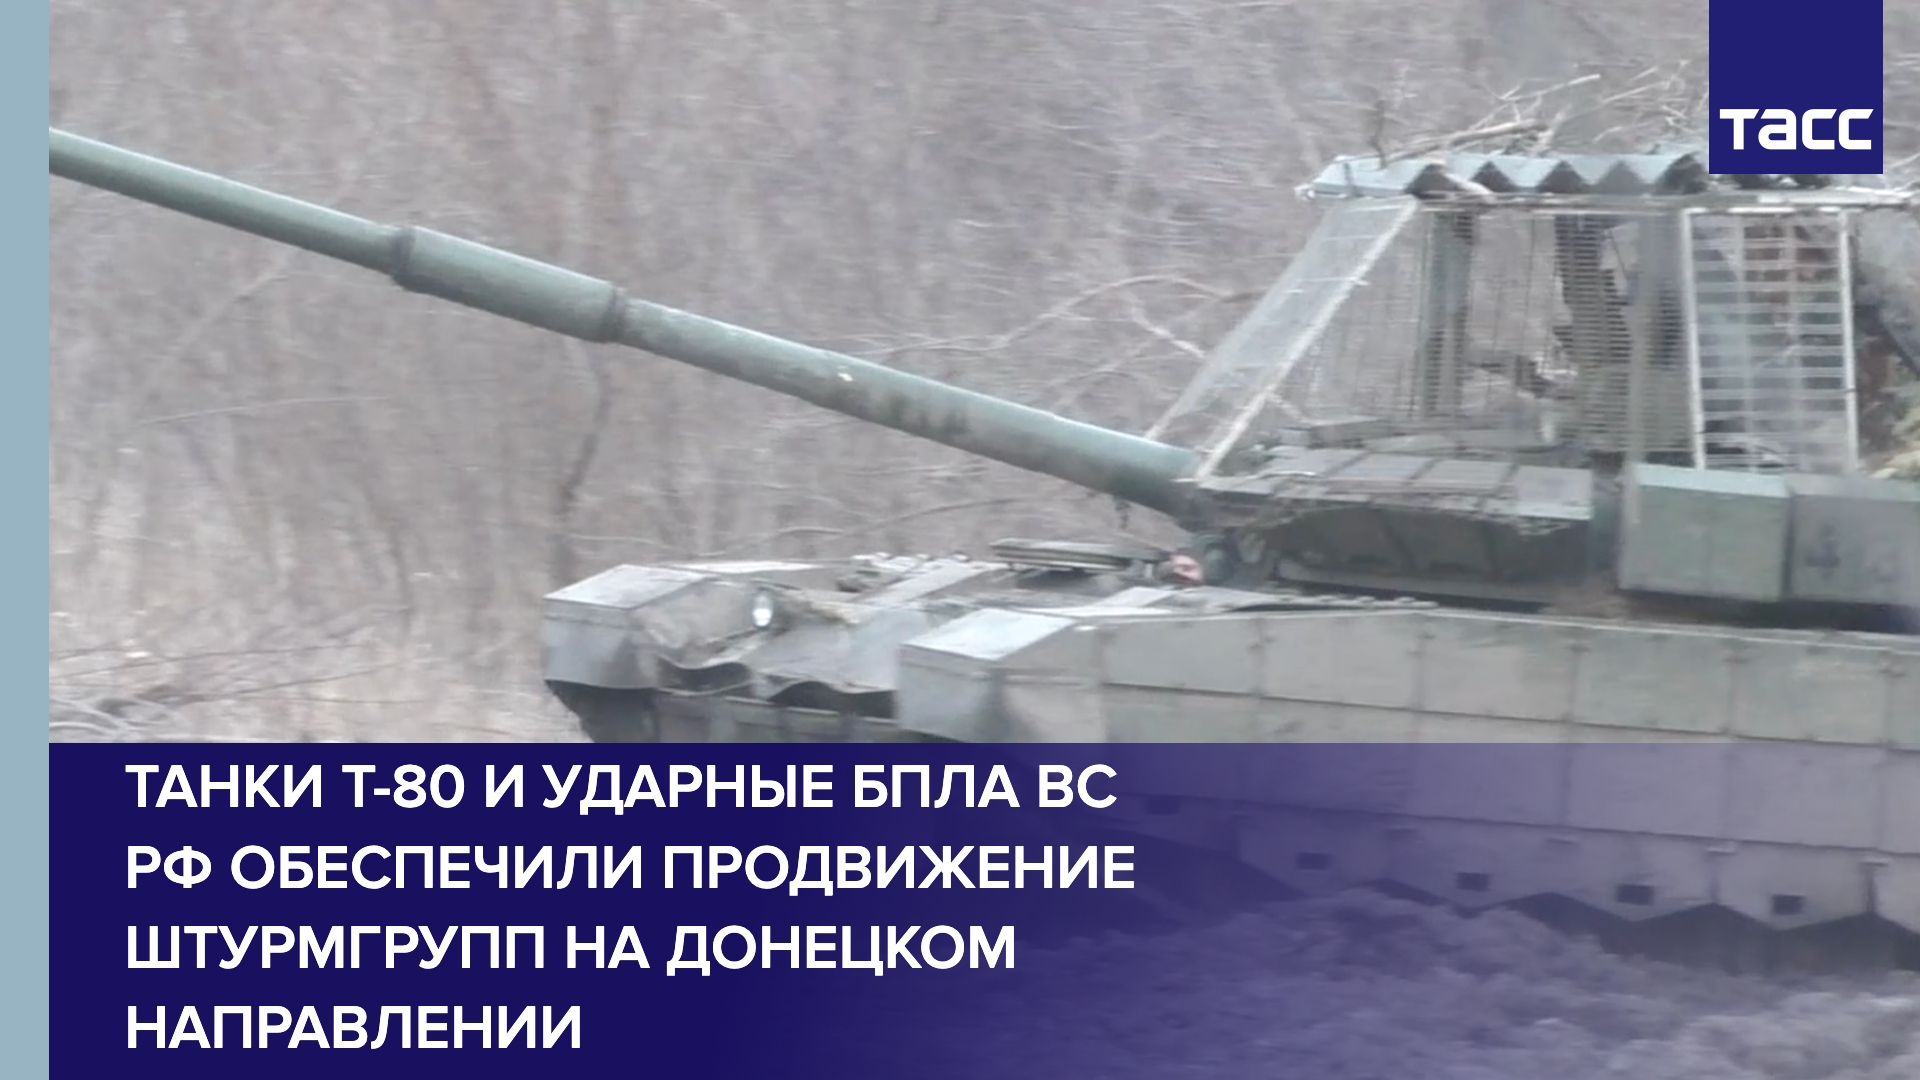 Танки Т-80 и ударные БПЛА ВС РФ обеспечили продвижение штурмгрупп на донецком направлении